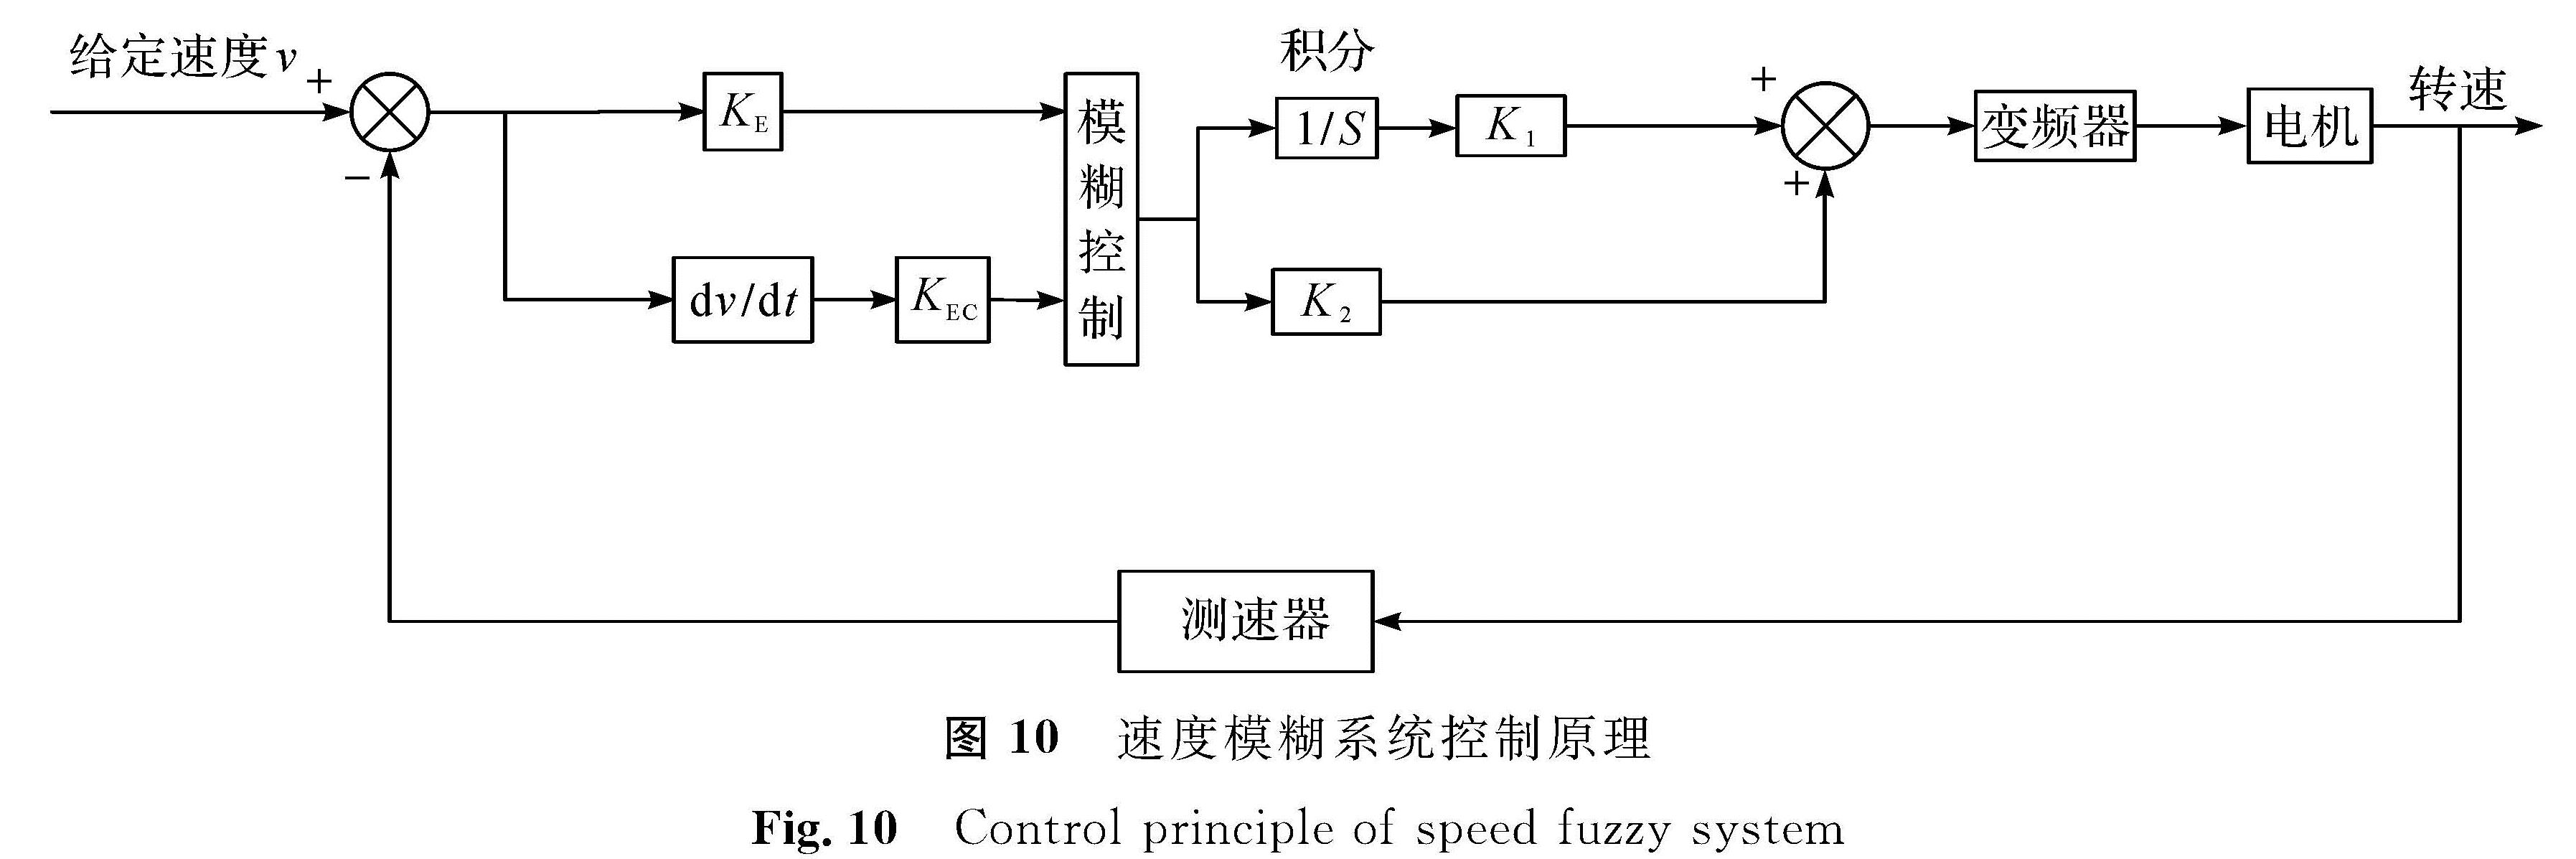 图 10 速度模糊系统控制原理<br/>Fig.10 Control principle of speed fuzzy system